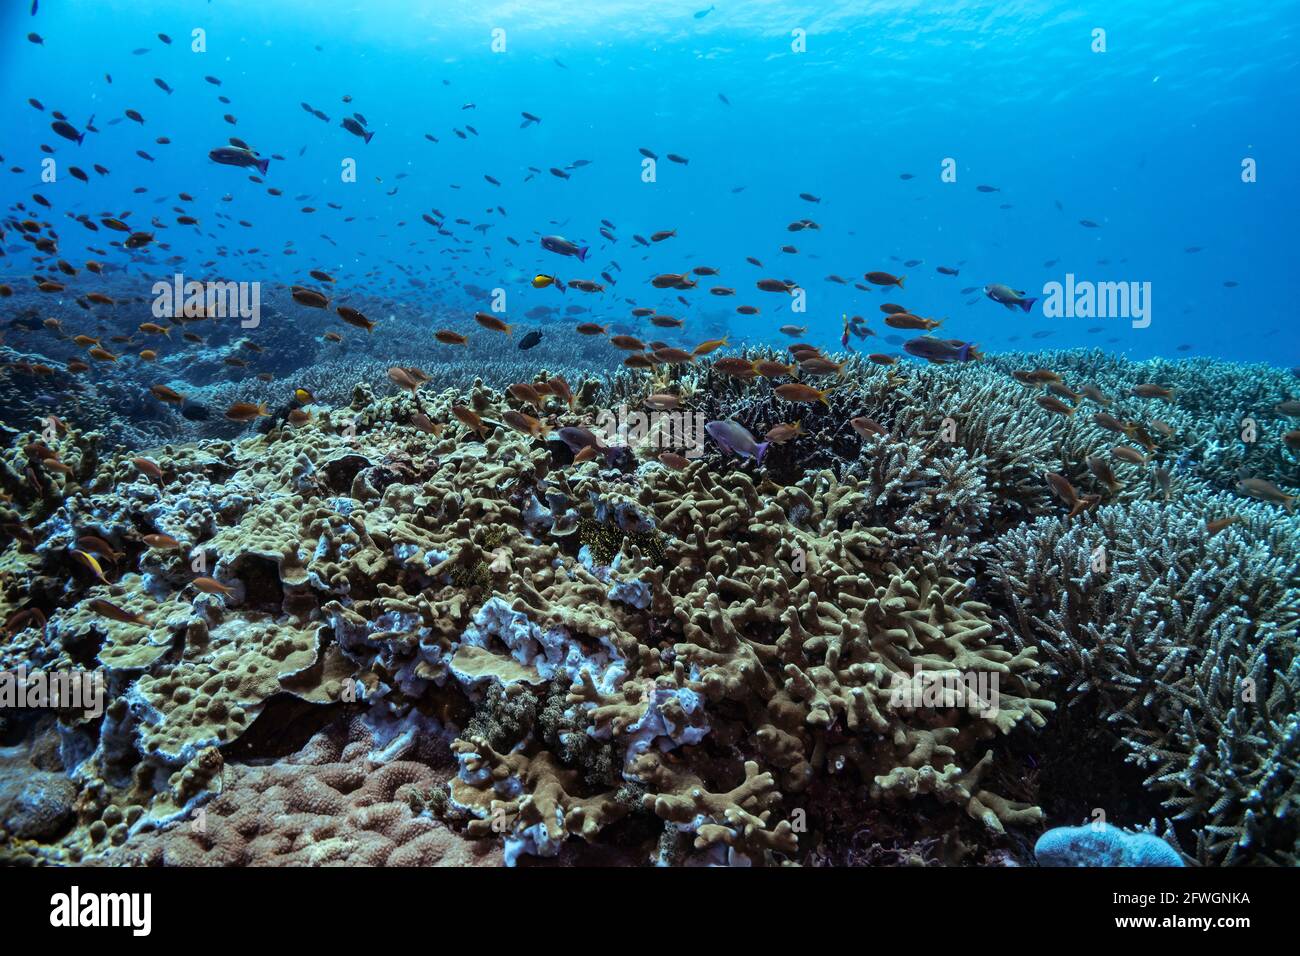 Wunderschöner Panoramablick über das tropische Riff in Indonesien, das von vielen verschiedenen Korallenarten bevölkert ist, sowohl weich als auch hart. Viele kleine Fische. Bild ta Stockfoto